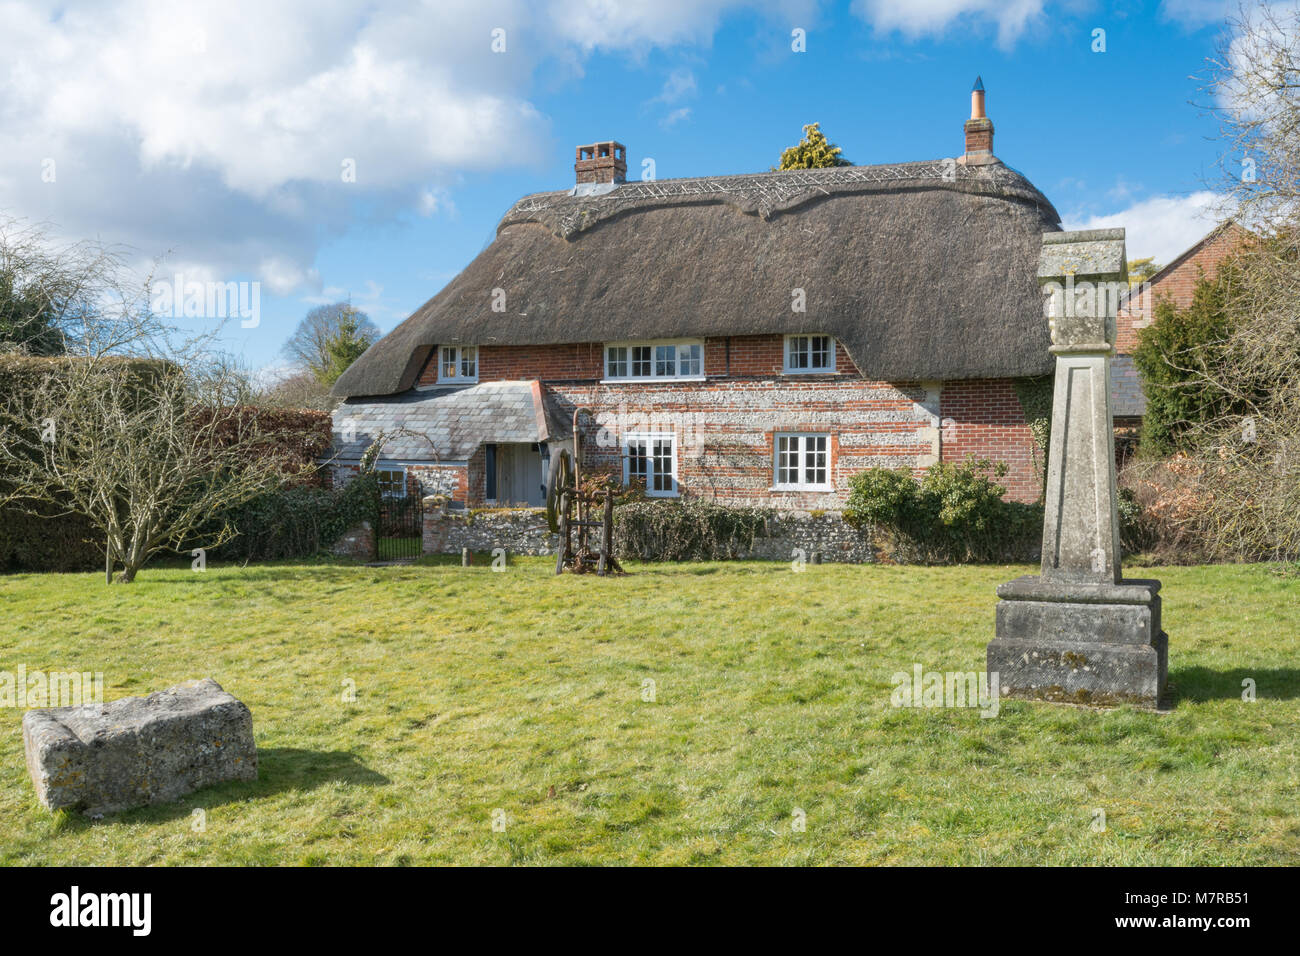 Chaumière de charme et de village en village vert Martin dans le Hampshire, au Royaume-Uni, avec la réplique 2000 croix de village Banque D'Images